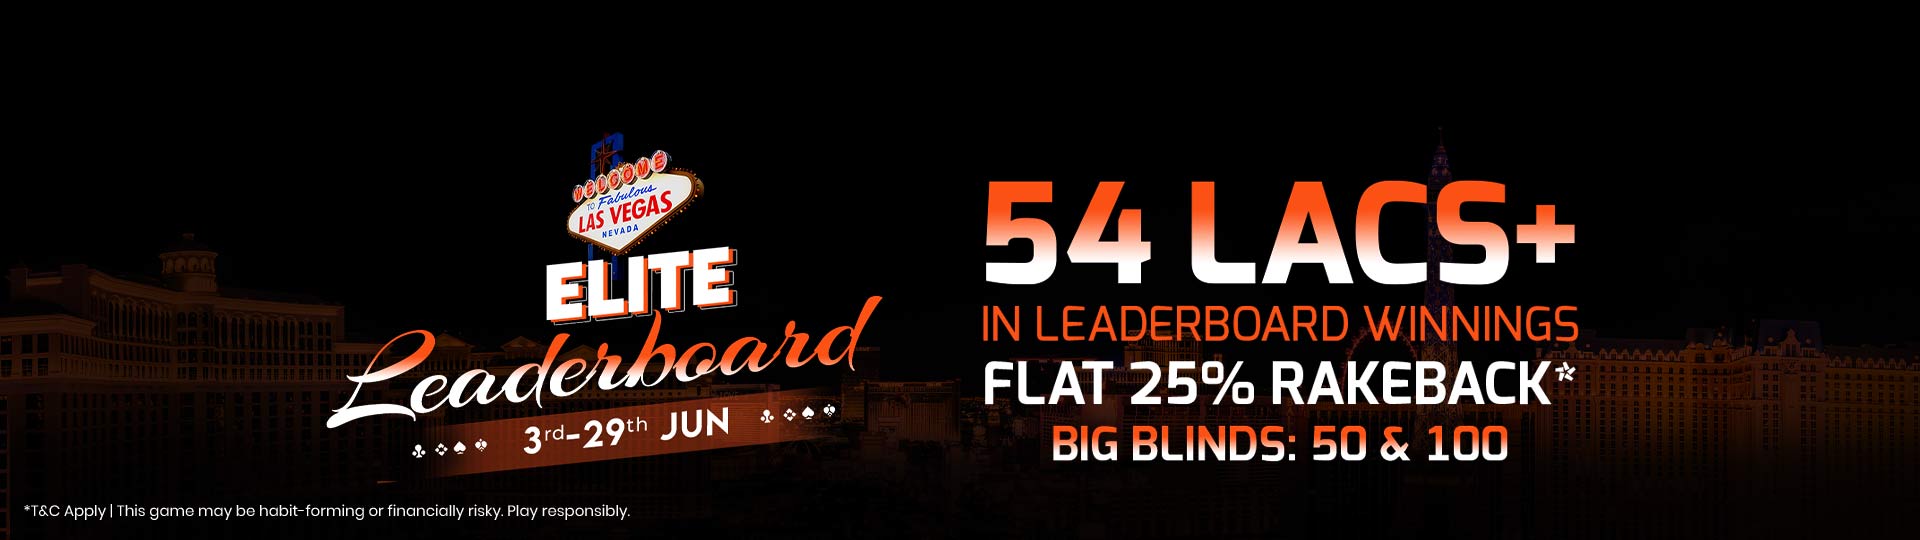 Adda52|Online|Poker|Elite Leaderboards |June